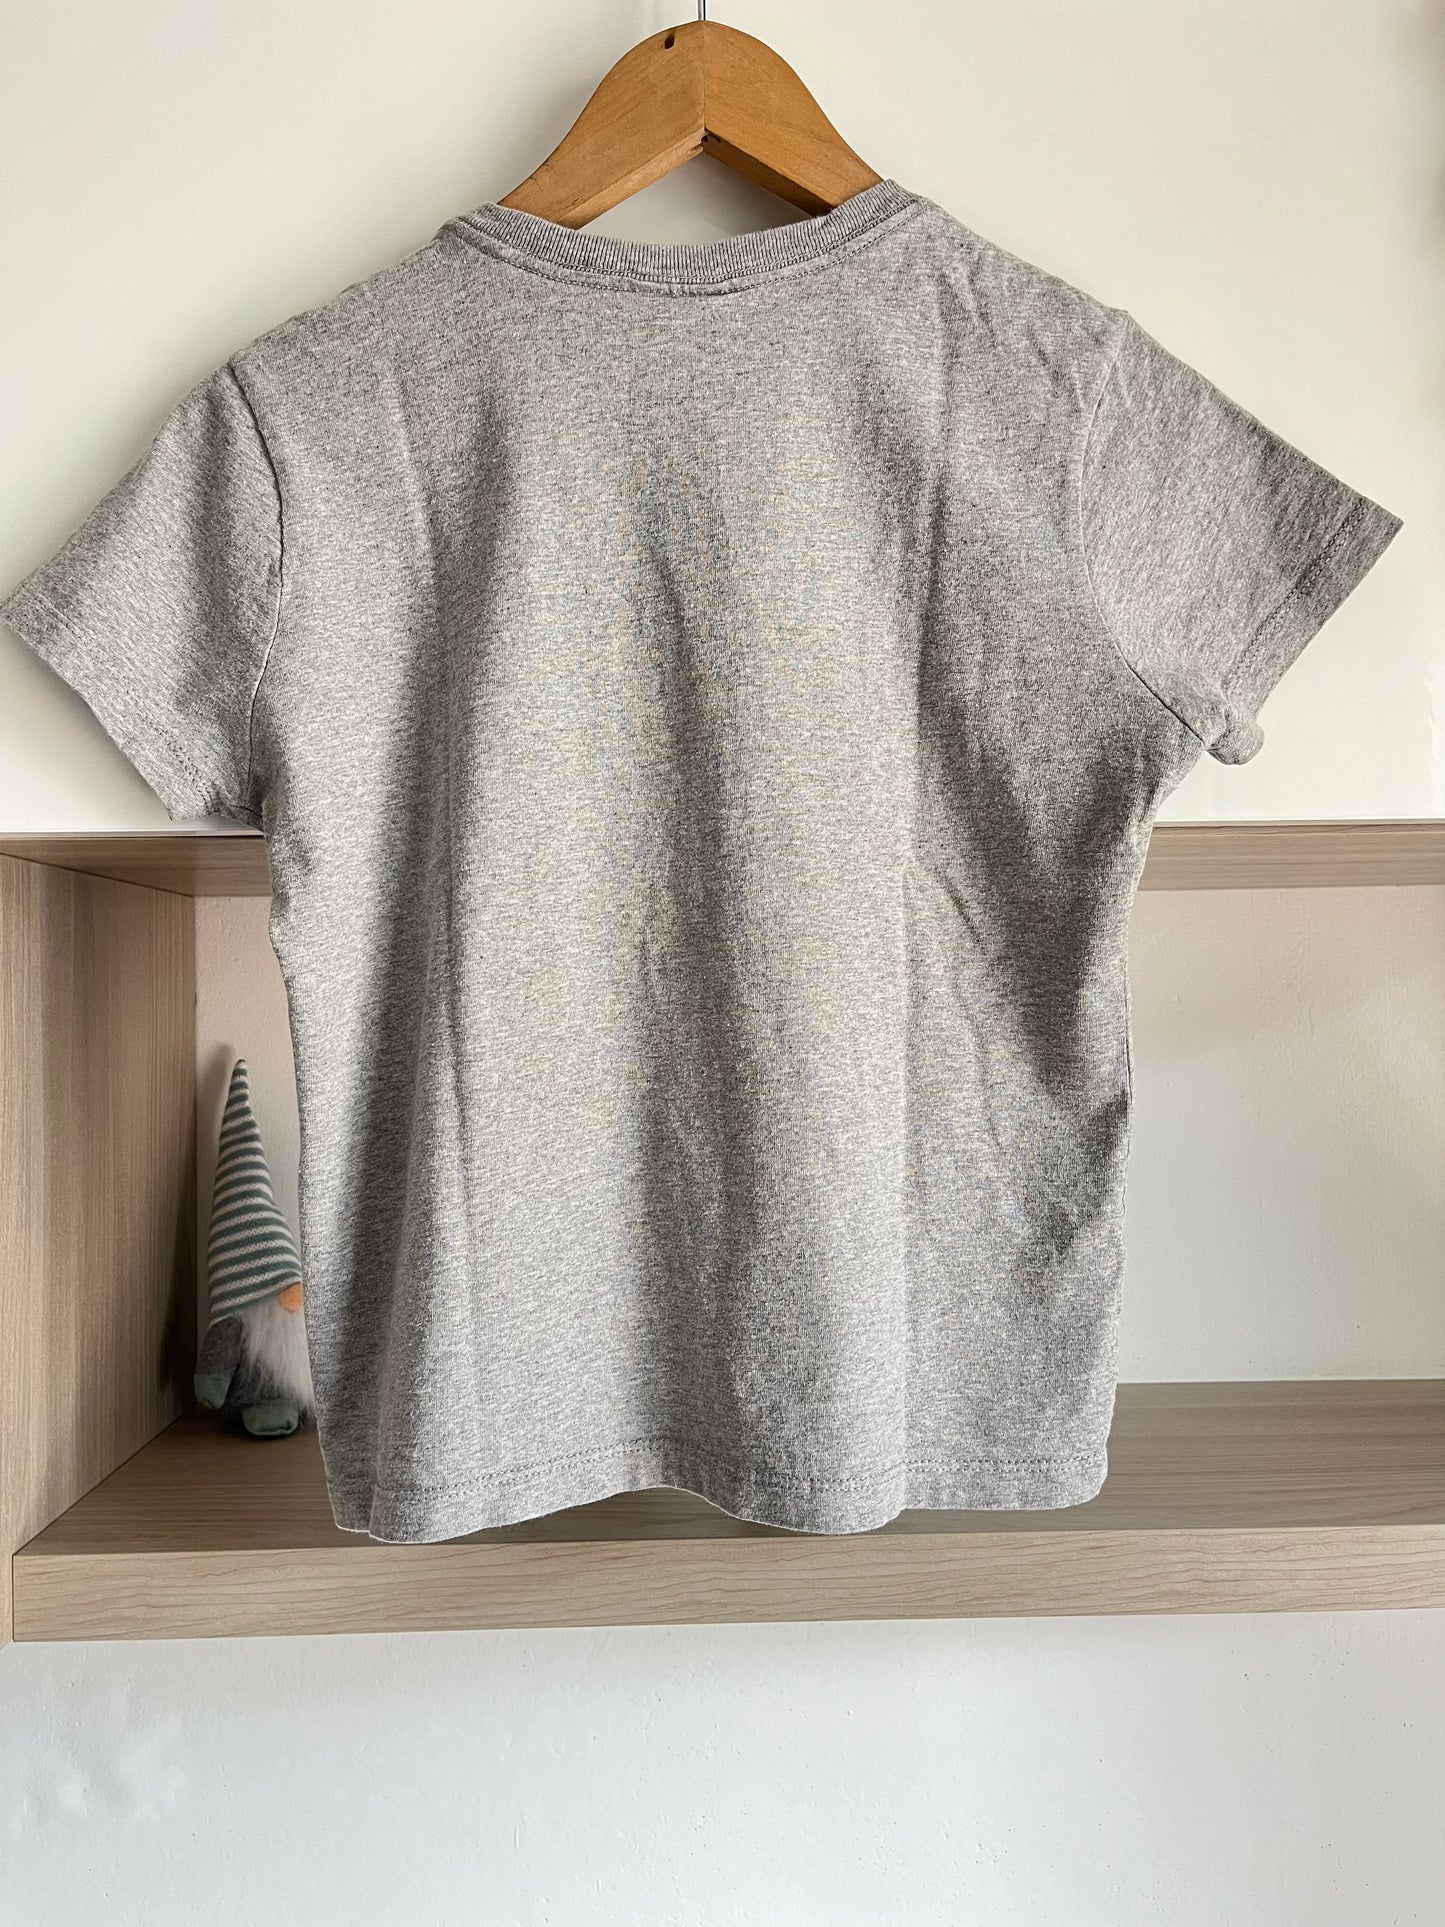 T-Shirt Tommy Hilfiger grigia taglia S